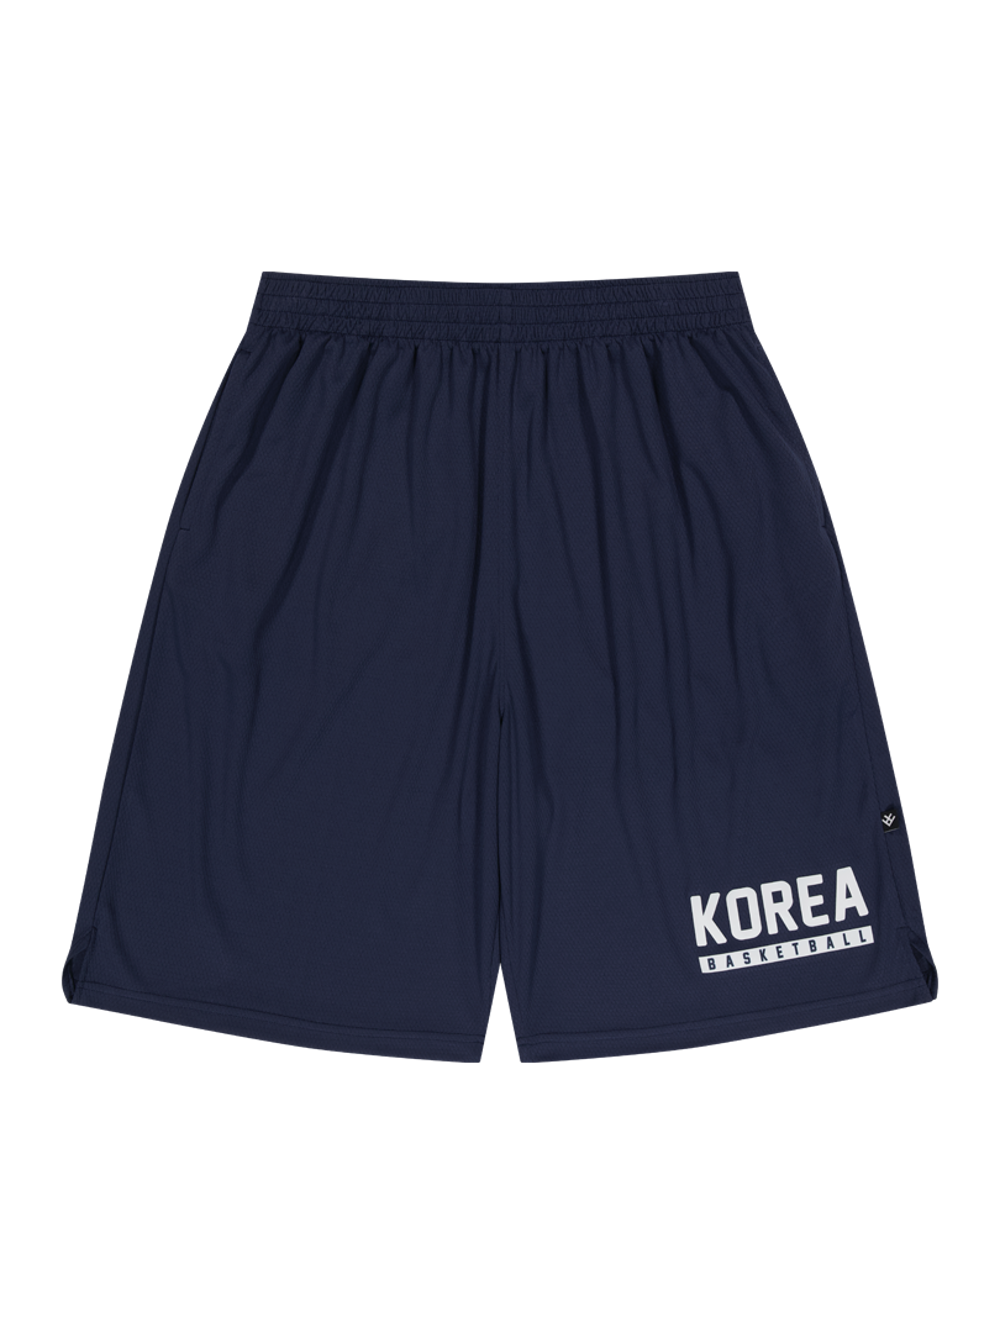 버저비터 코리아 텍스트 쇼츠 팬츠, 네이비 (BUZZERBEATER Korea Text Short Pants, Navy)